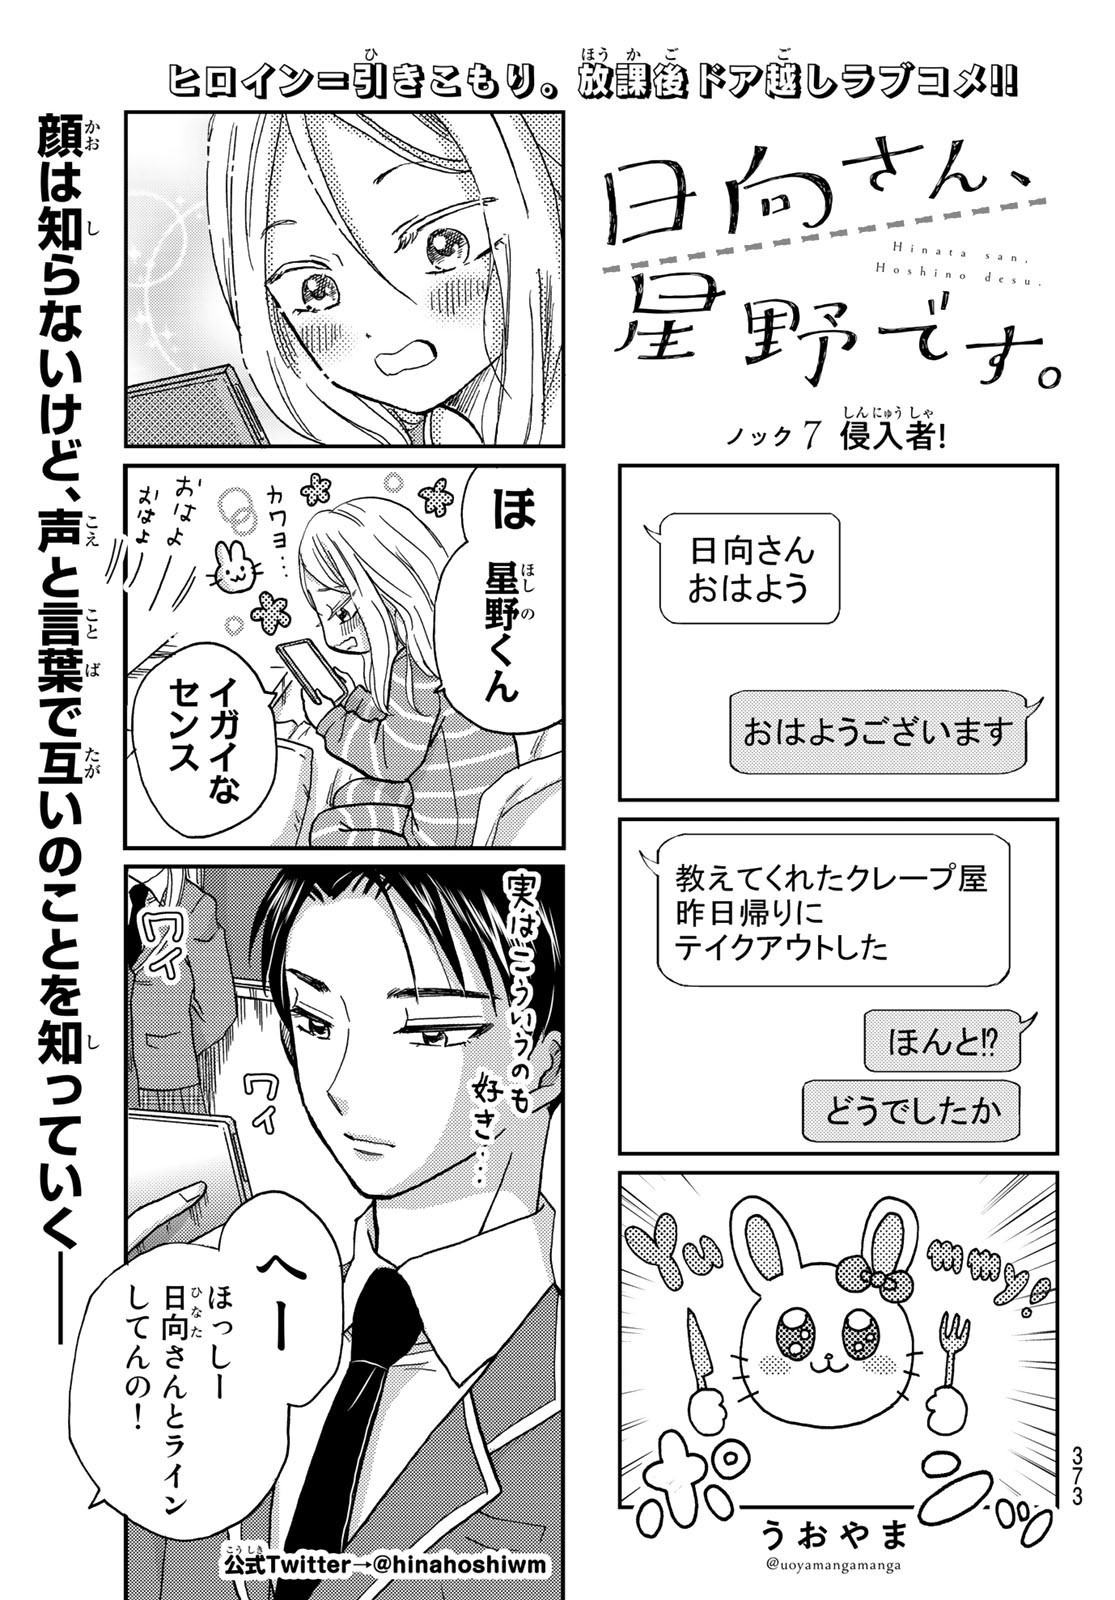 Hinata-san, Hoshino desu. - Chapter 007 - Page 1